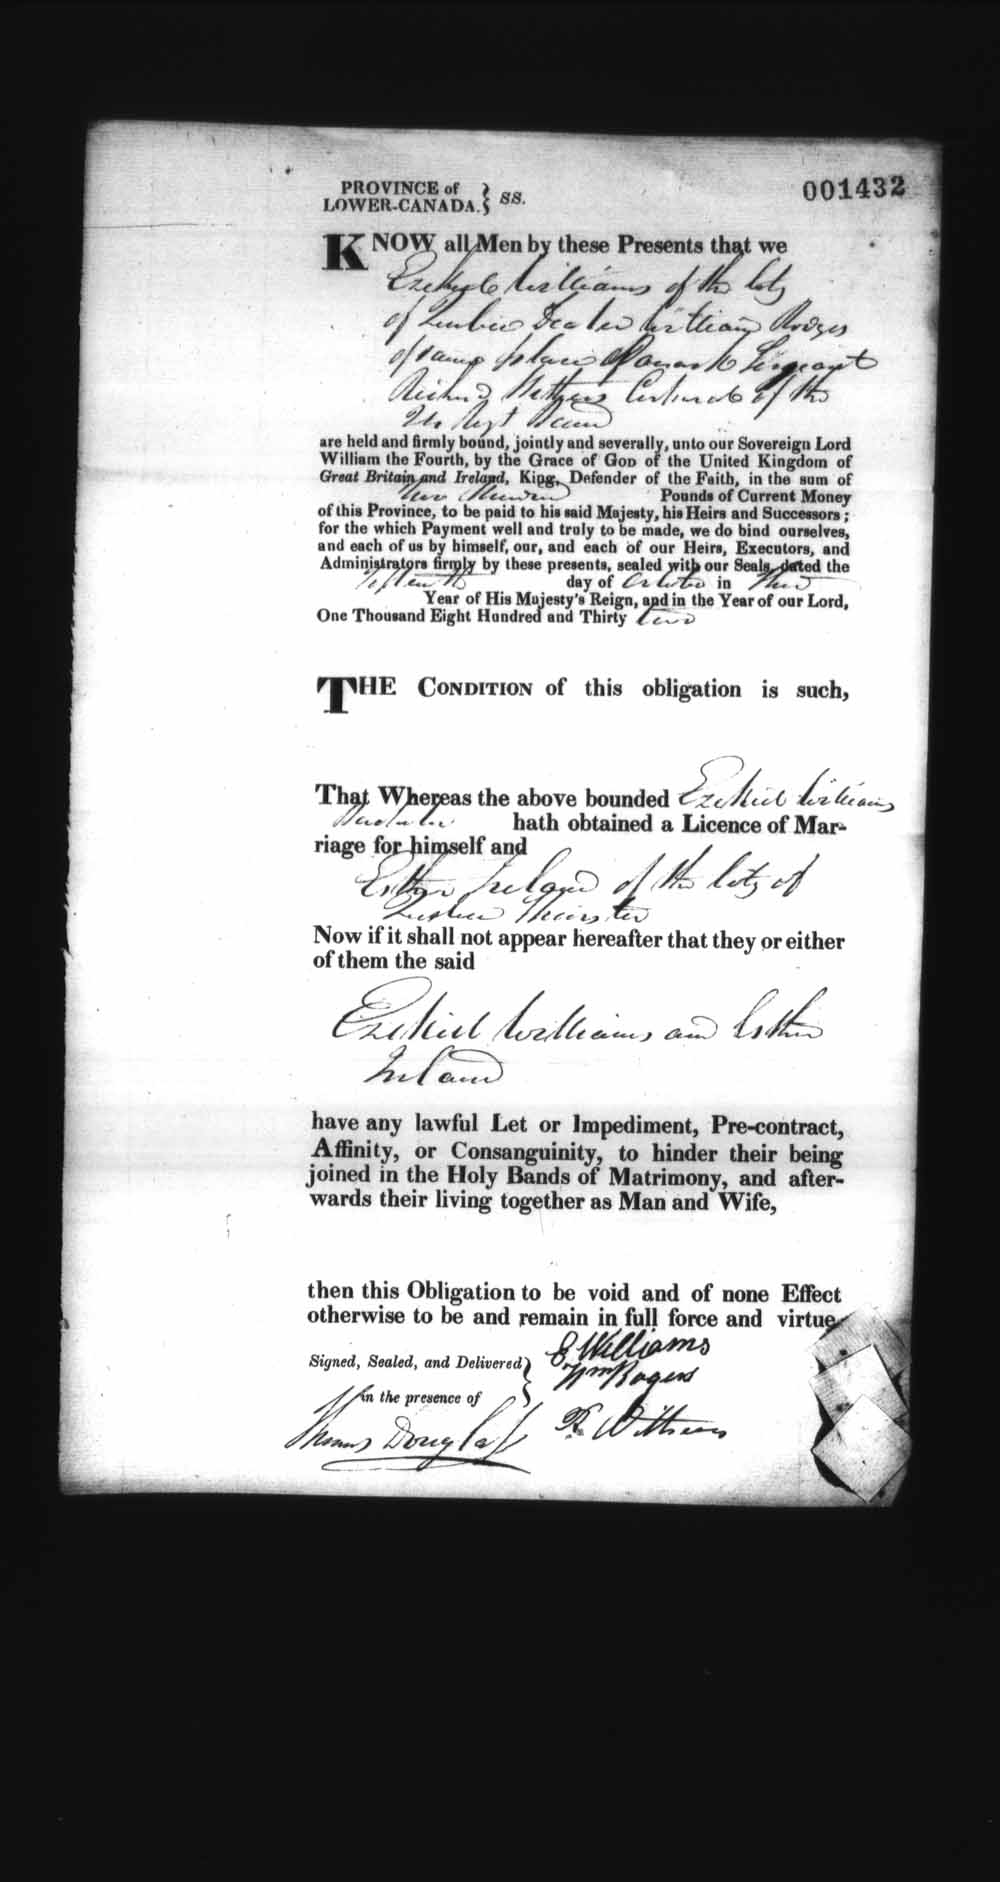 Page numérisé de Cautionnements de mariages pour le Haut-Canada et le Bas-Canada (1779-1865) pour l'image numéro: e008237635